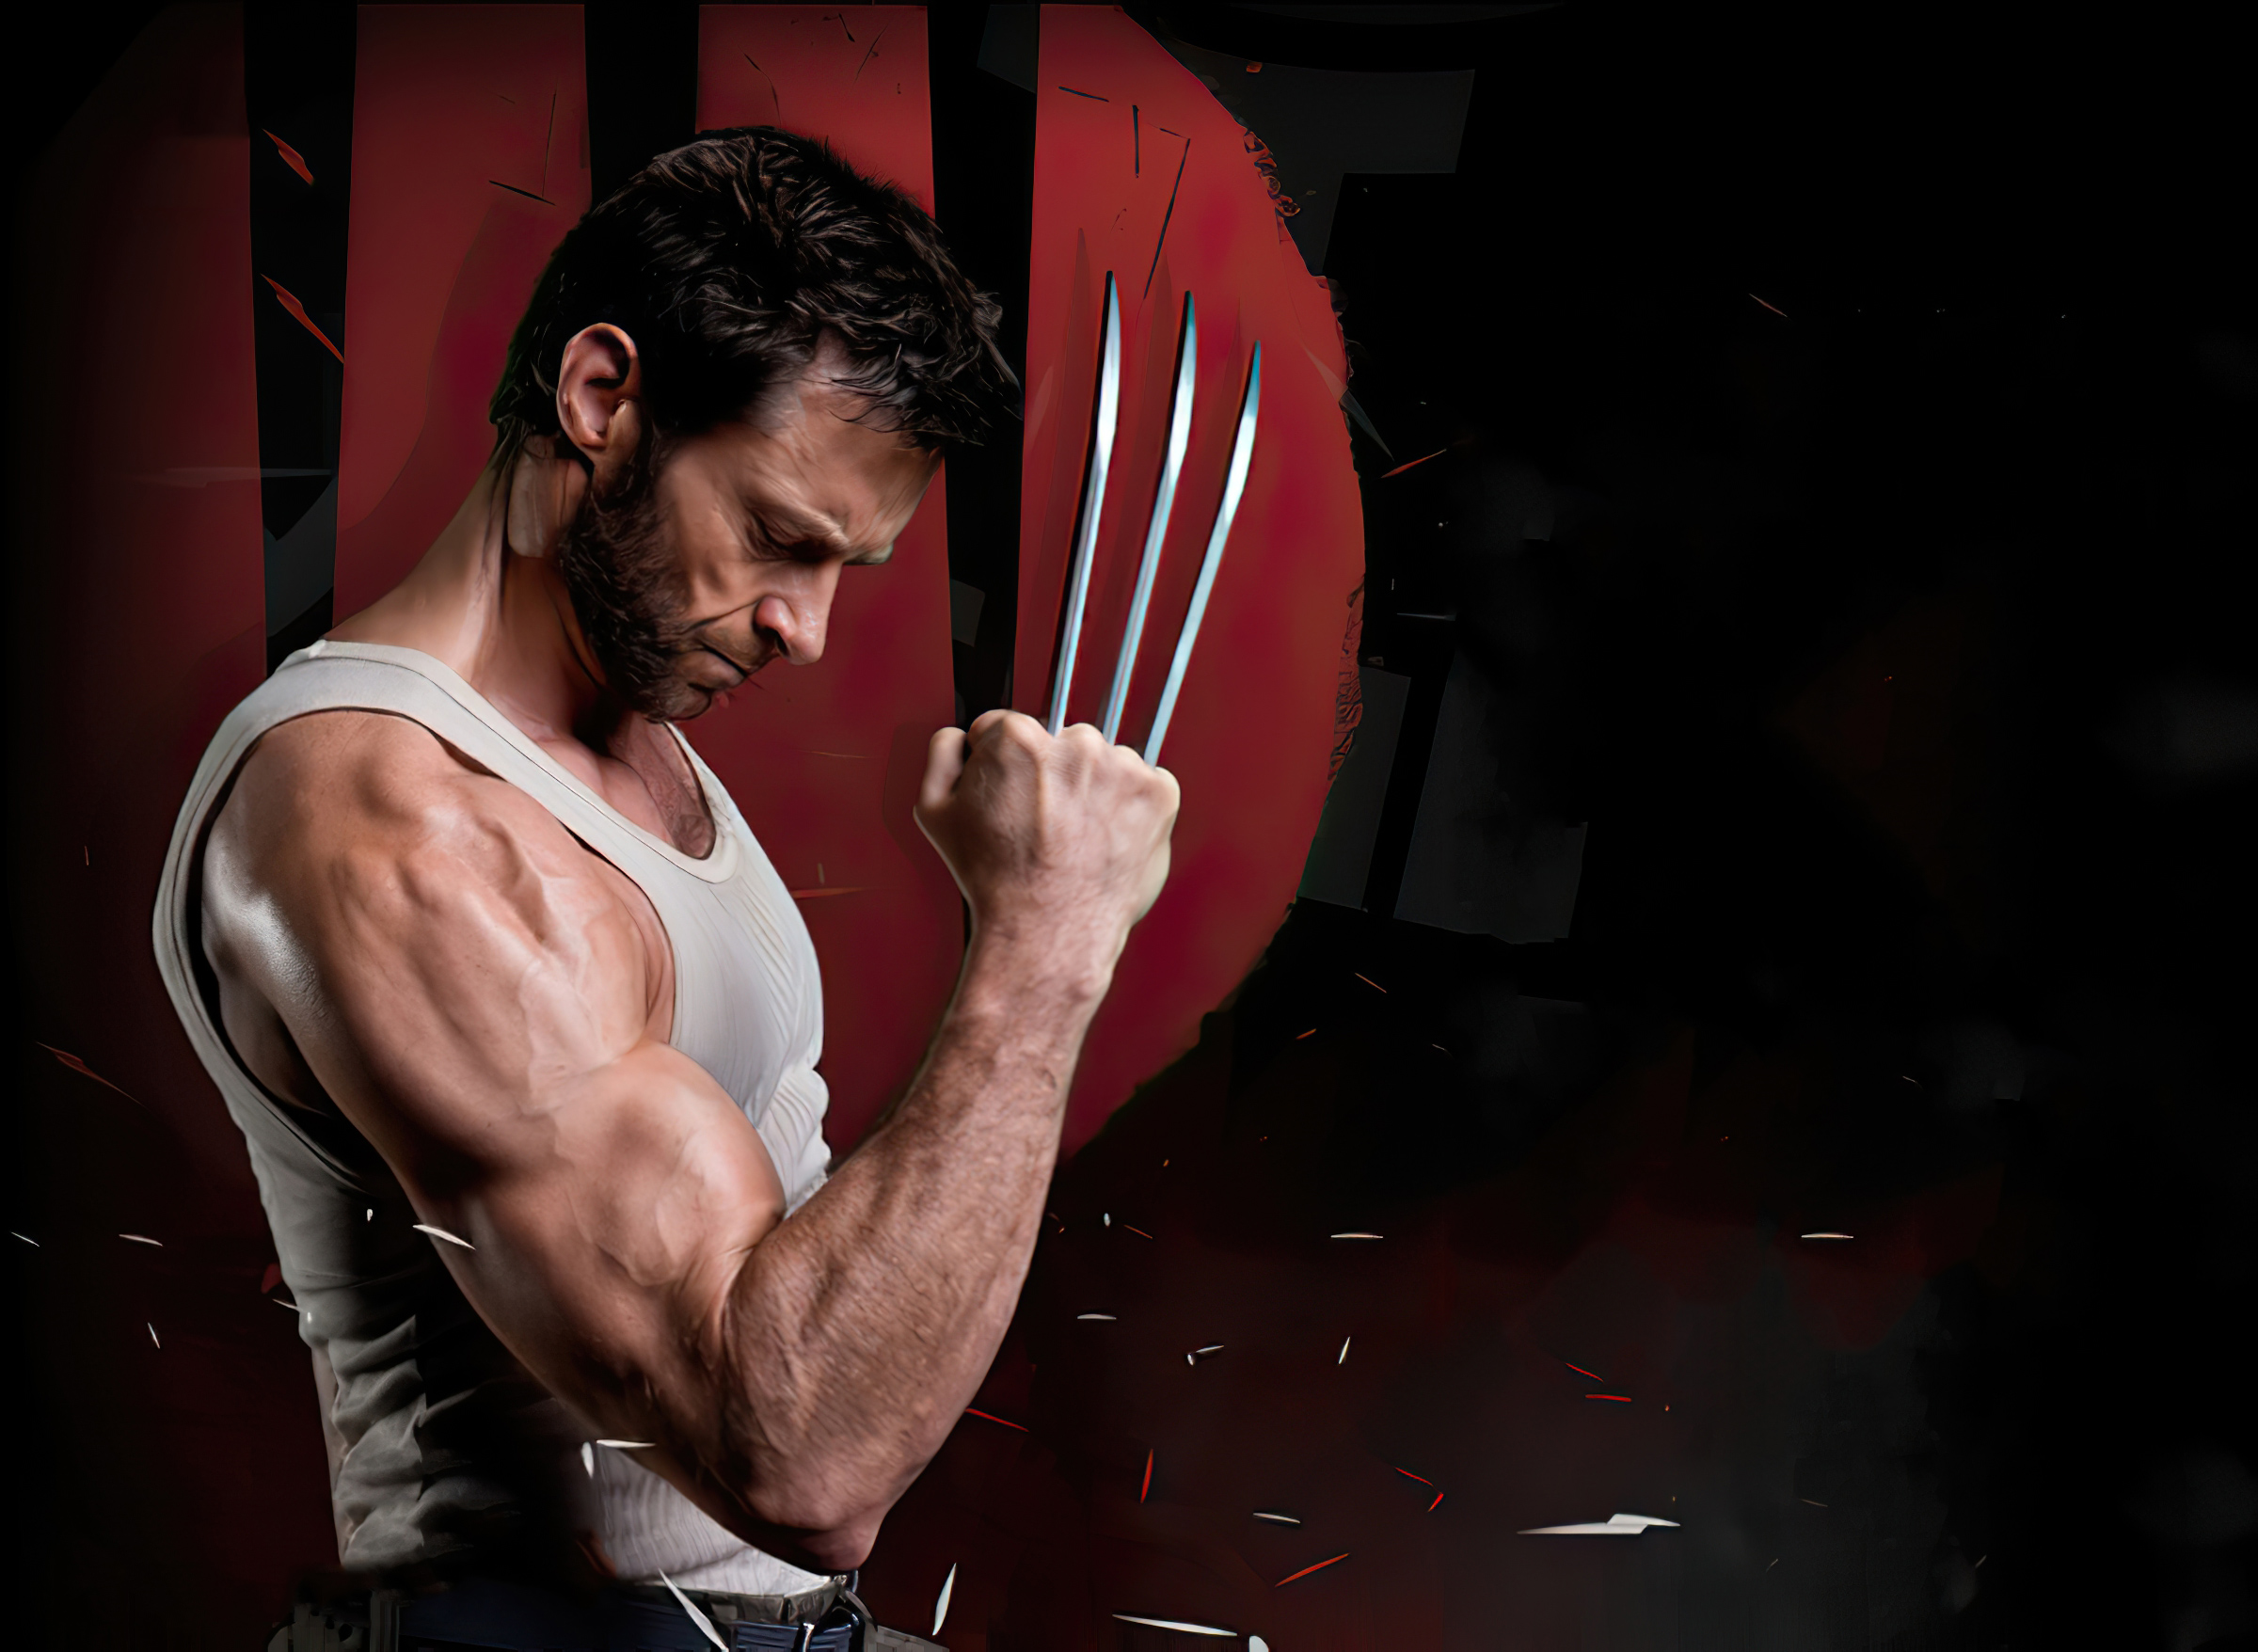 74+] Hugh Jackman Wolverine Wallpaper - WallpaperSafari